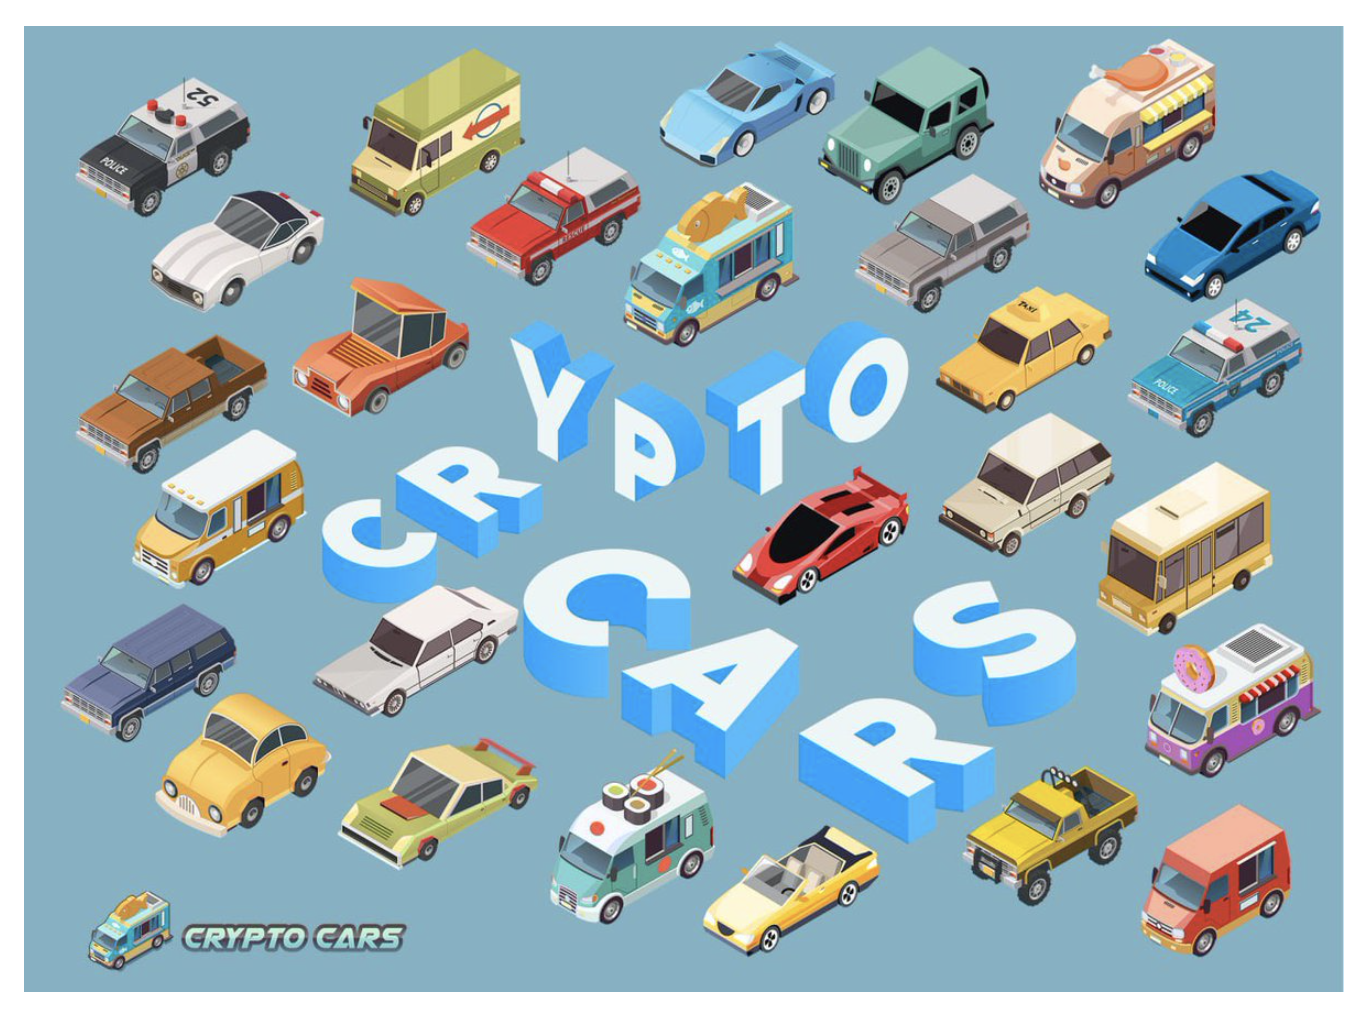 Tìm hiểu game CrytoCars là gì? Thông tin chi tiết về game CryptoCars và CCAR coin